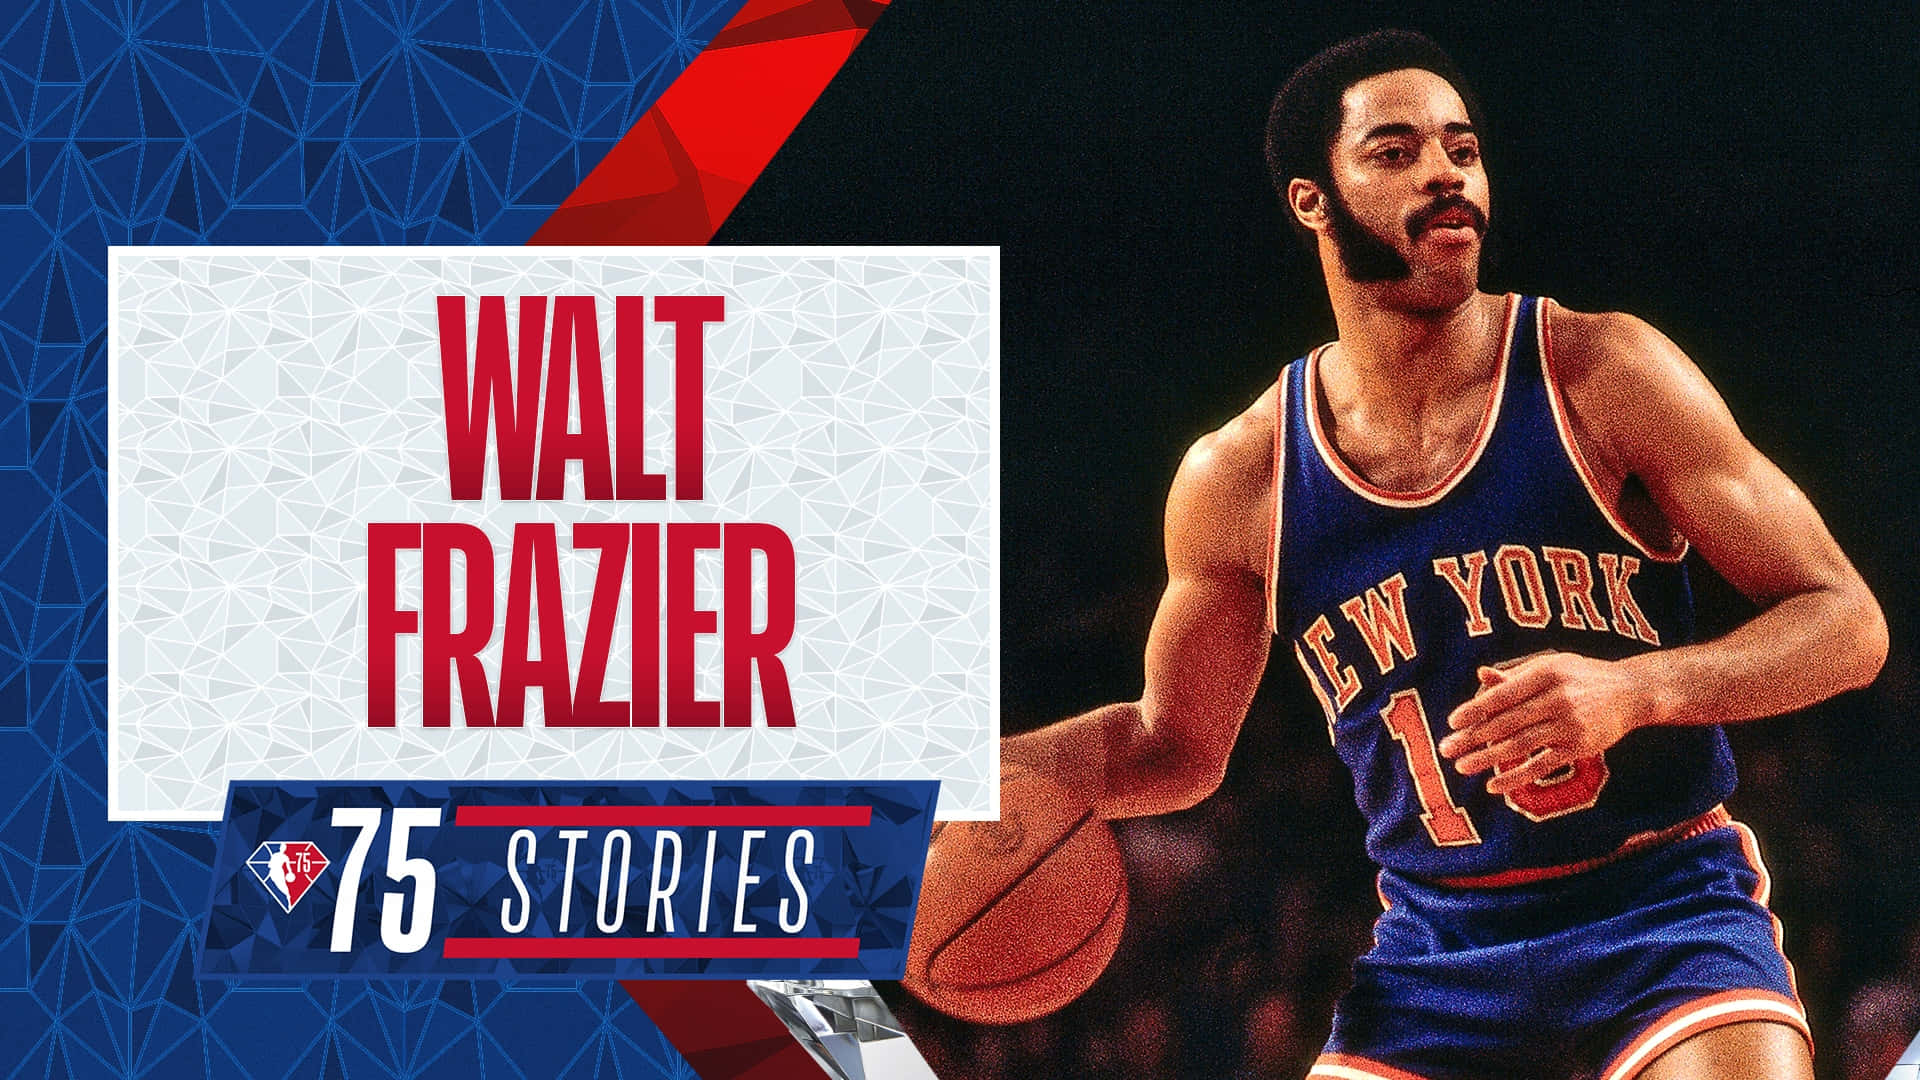 Walt Frazier NBA 75 Stories Poster Wallpaper